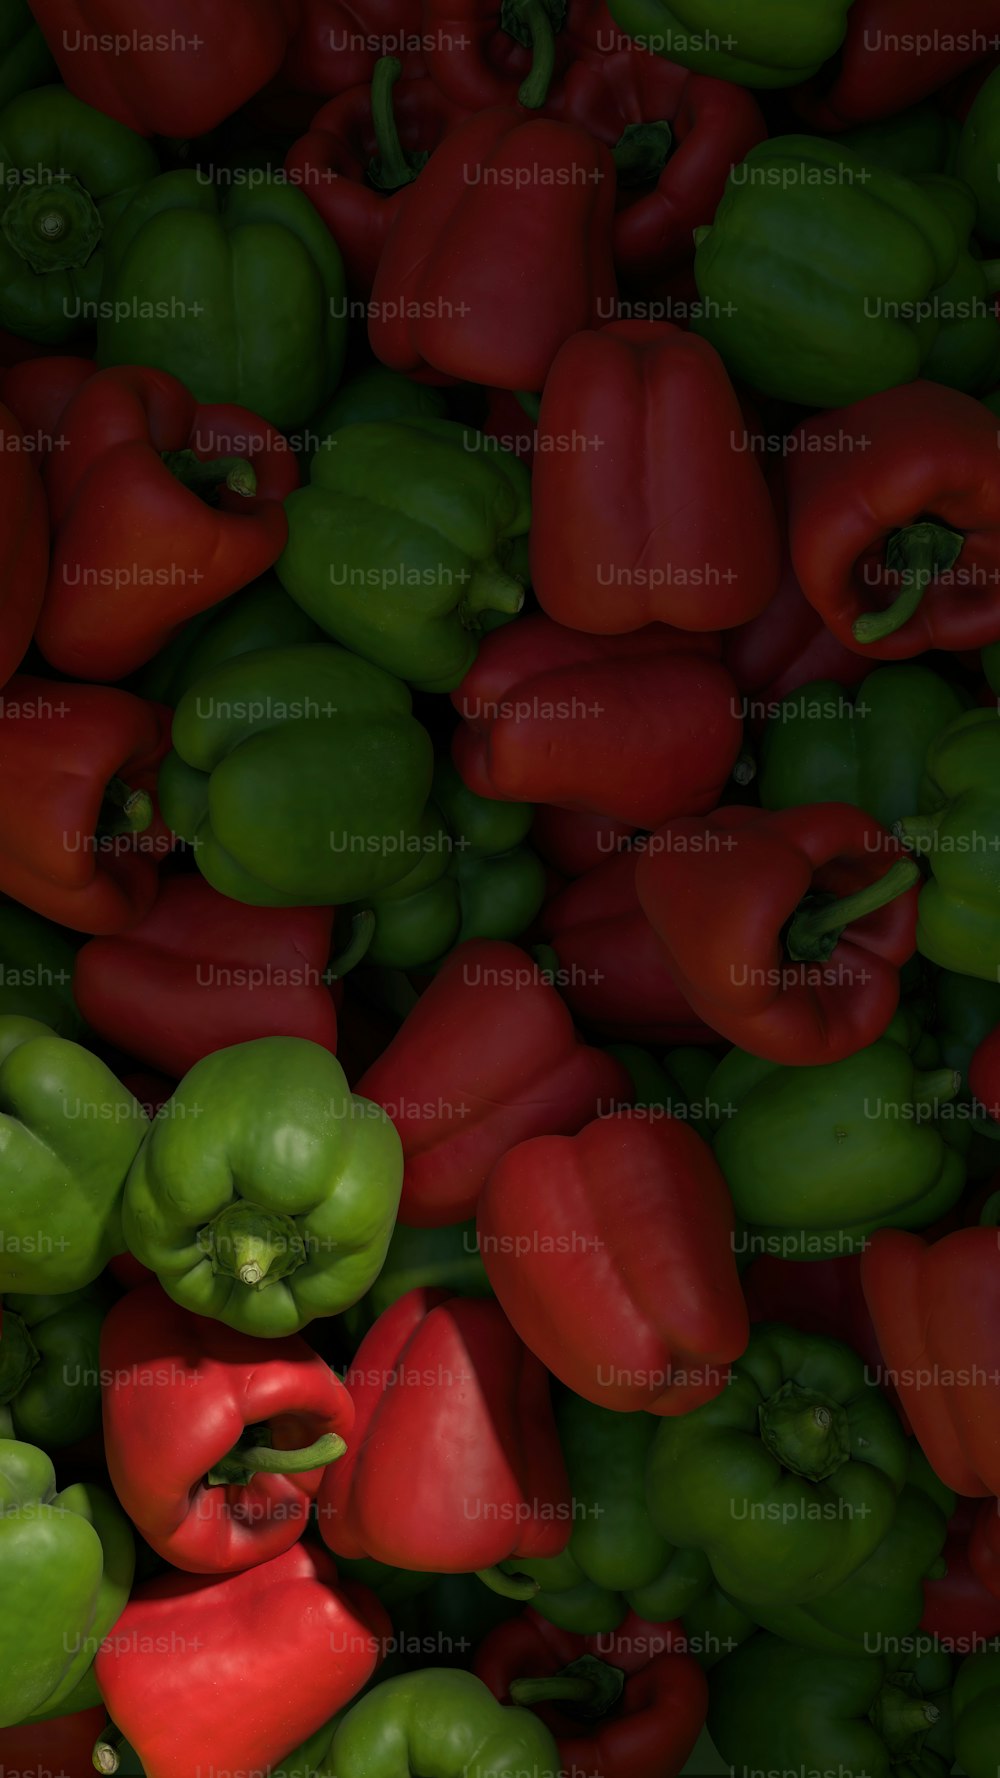 ein großer Haufen grüner und roter Paprika